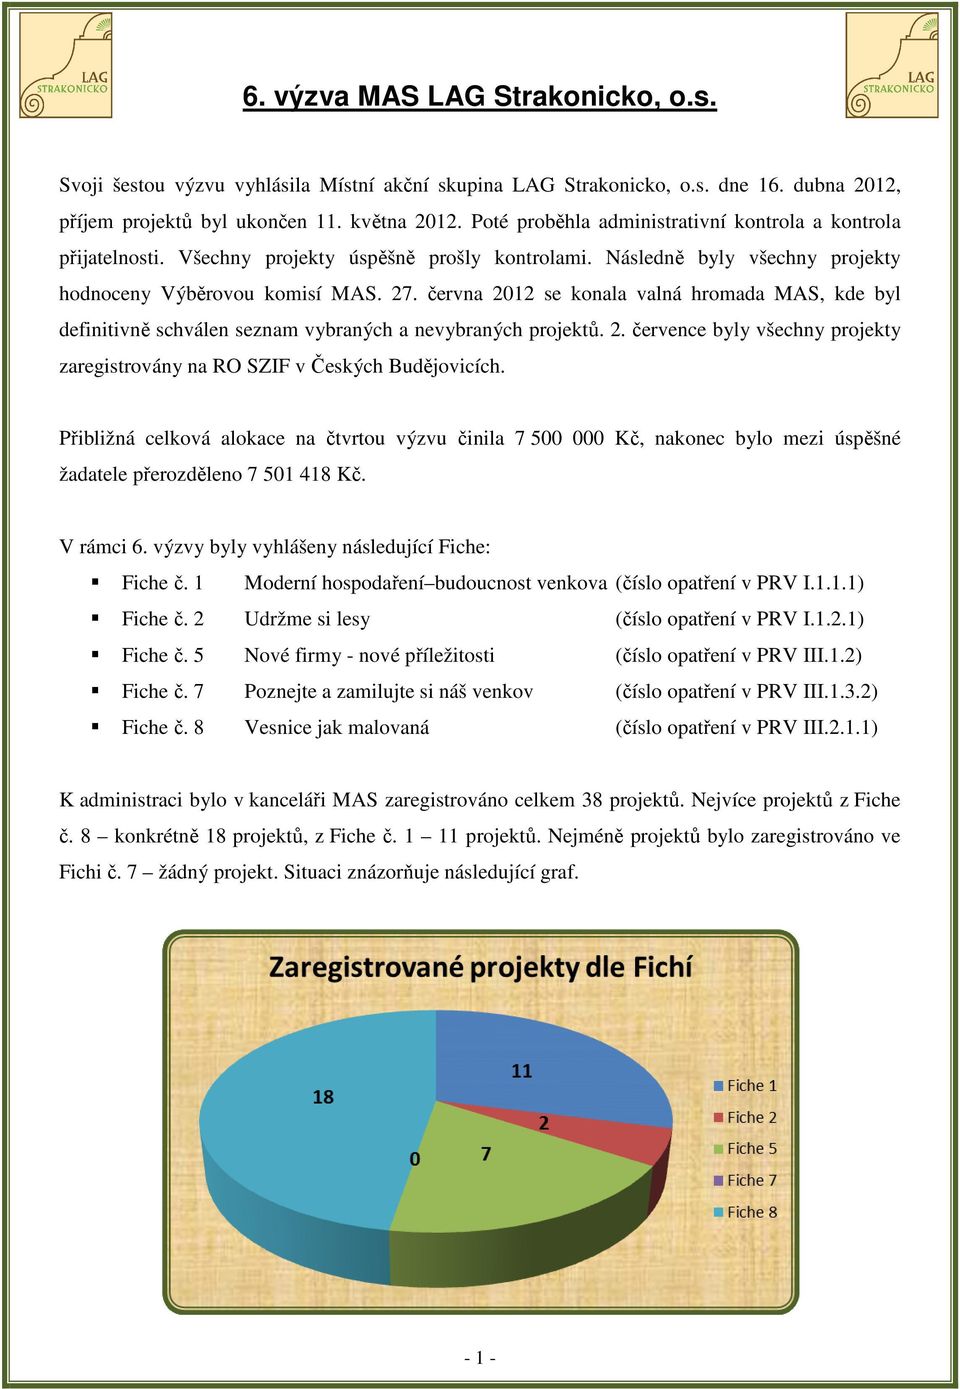 června 2012 se konala valná hromada MAS, kde byl definitivně schválen seznam vybraných a nevybraných projektů. 2. července byly všechny projekty zaregistrovány na RO SZIF v Českých Budějovicích.